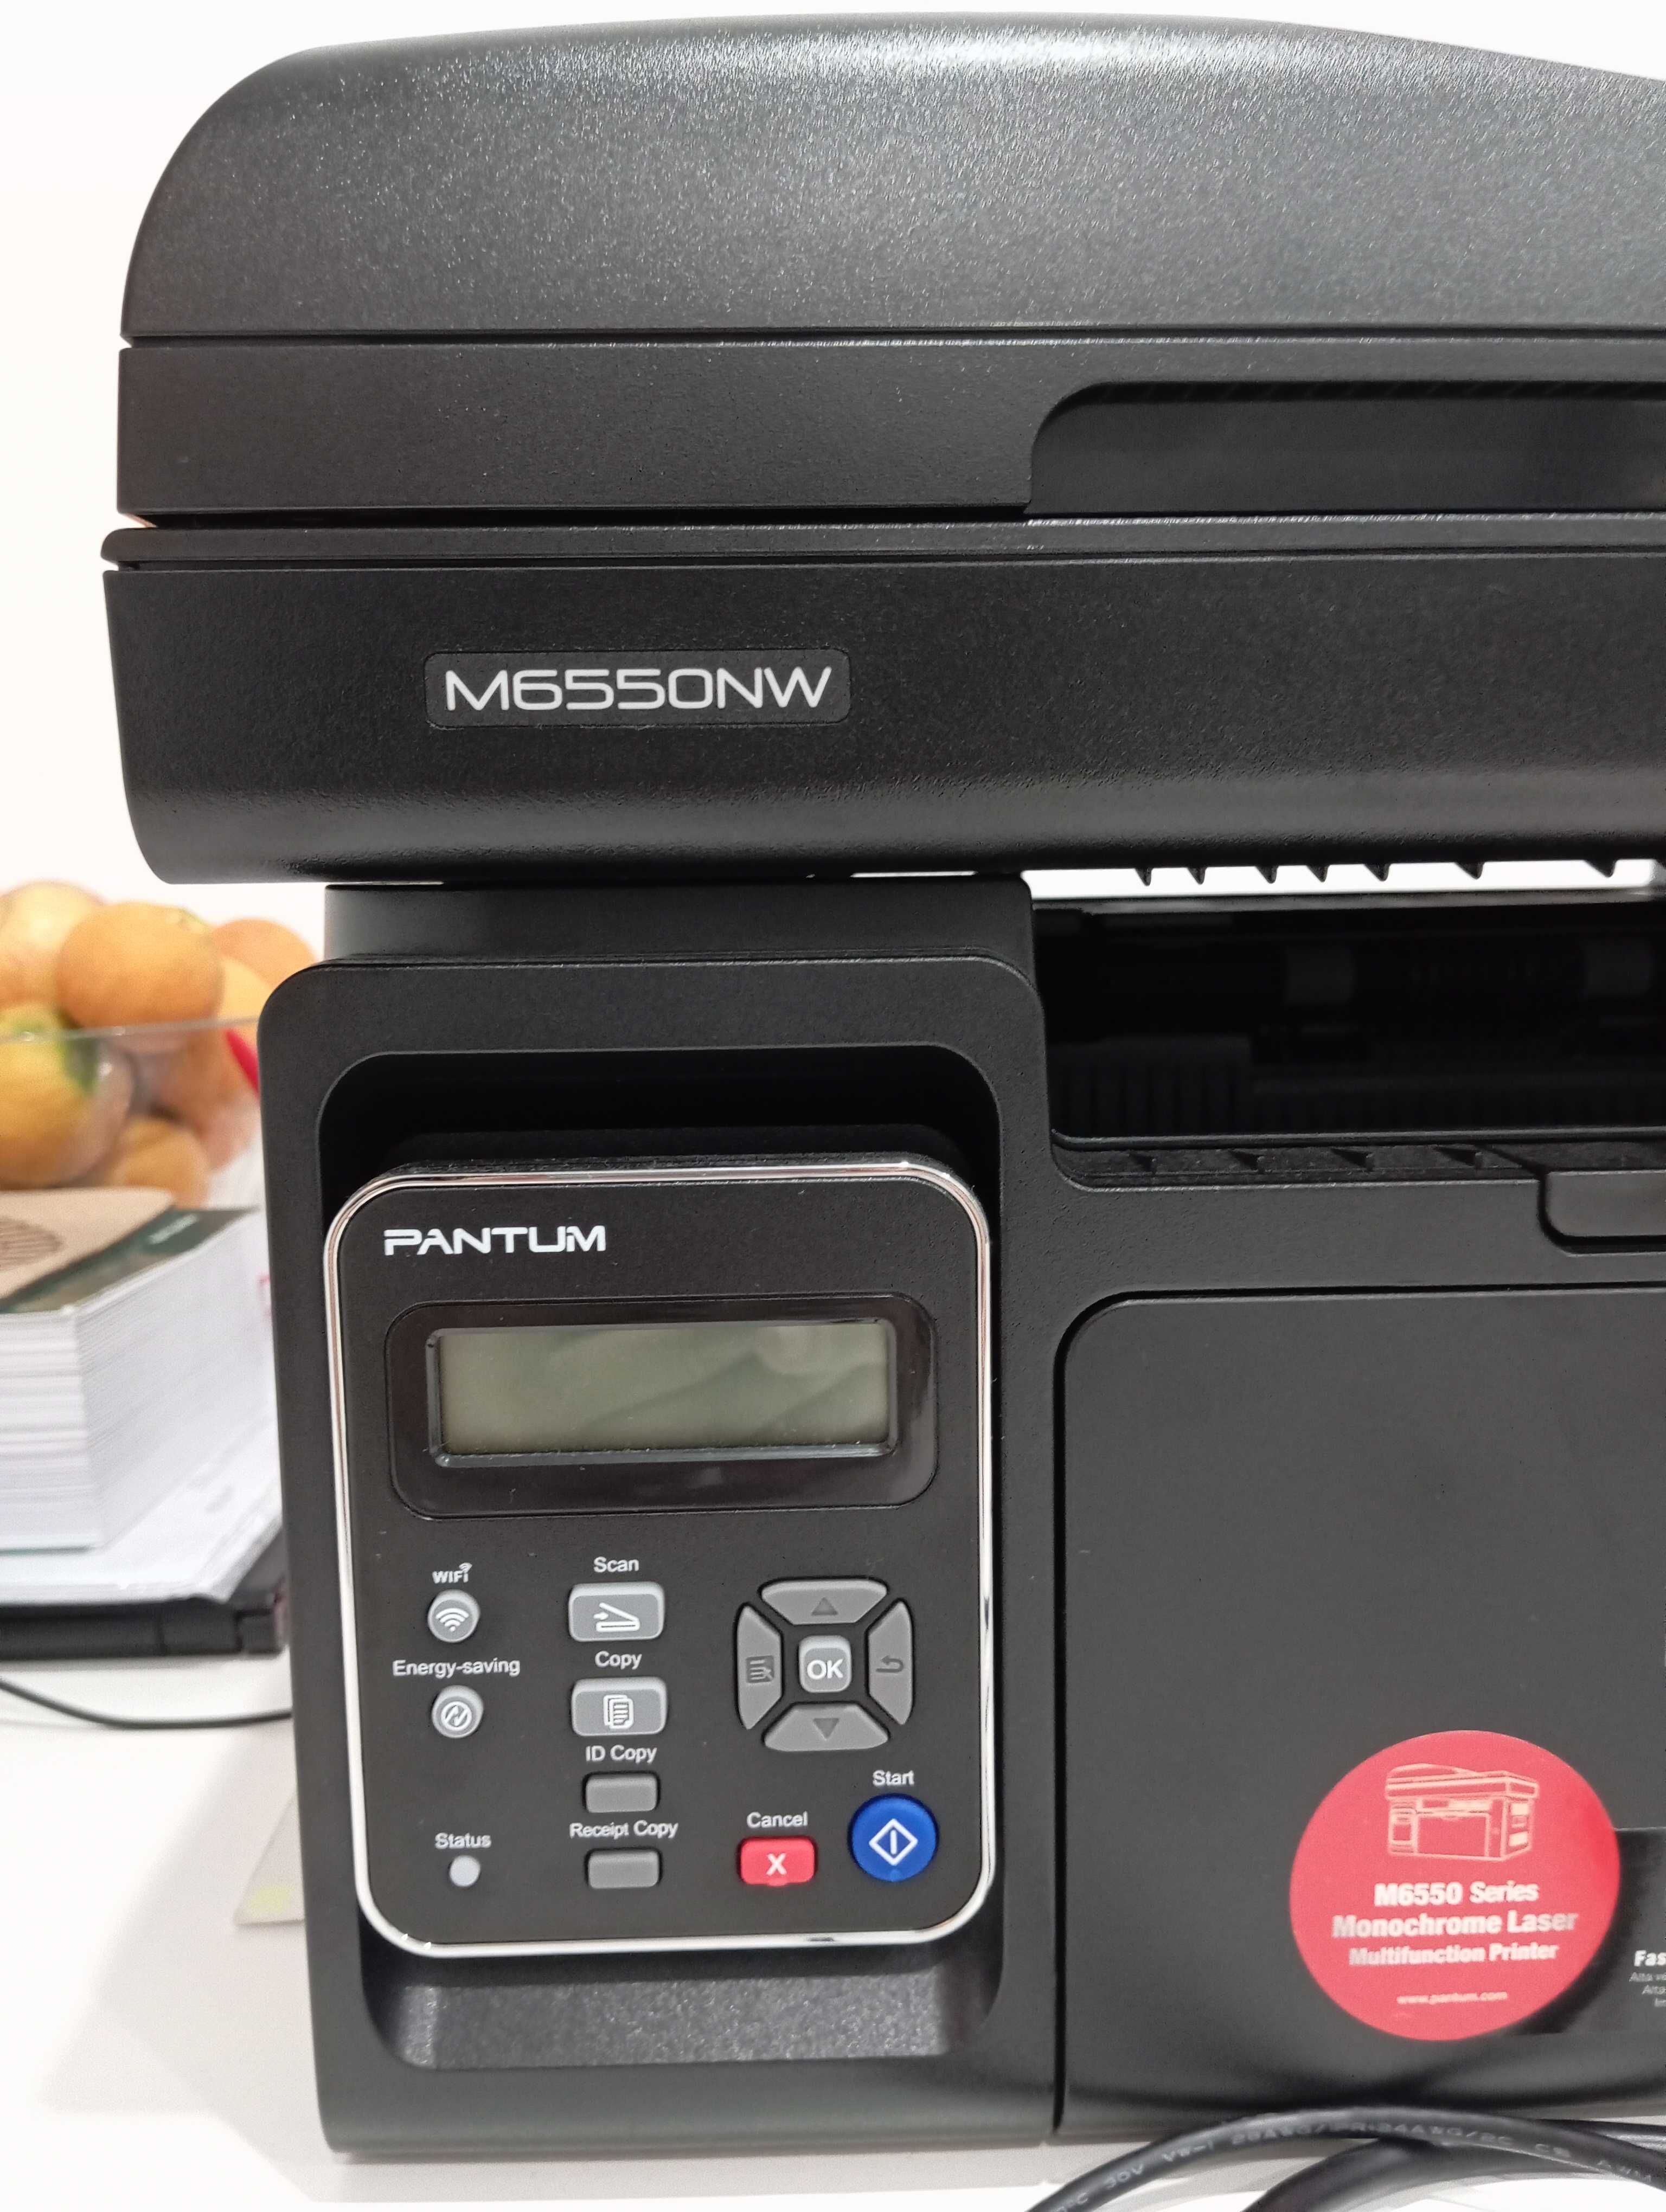 Impressora e digitalizadora multifunções PANTUM  M6550NW, como nova